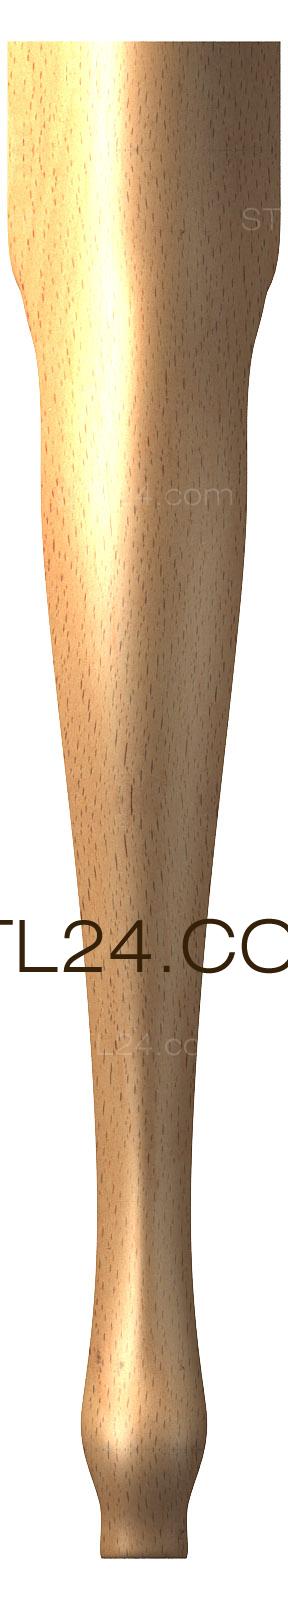 Ножки (NJ_0499) 3D модель для ЧПУ станка